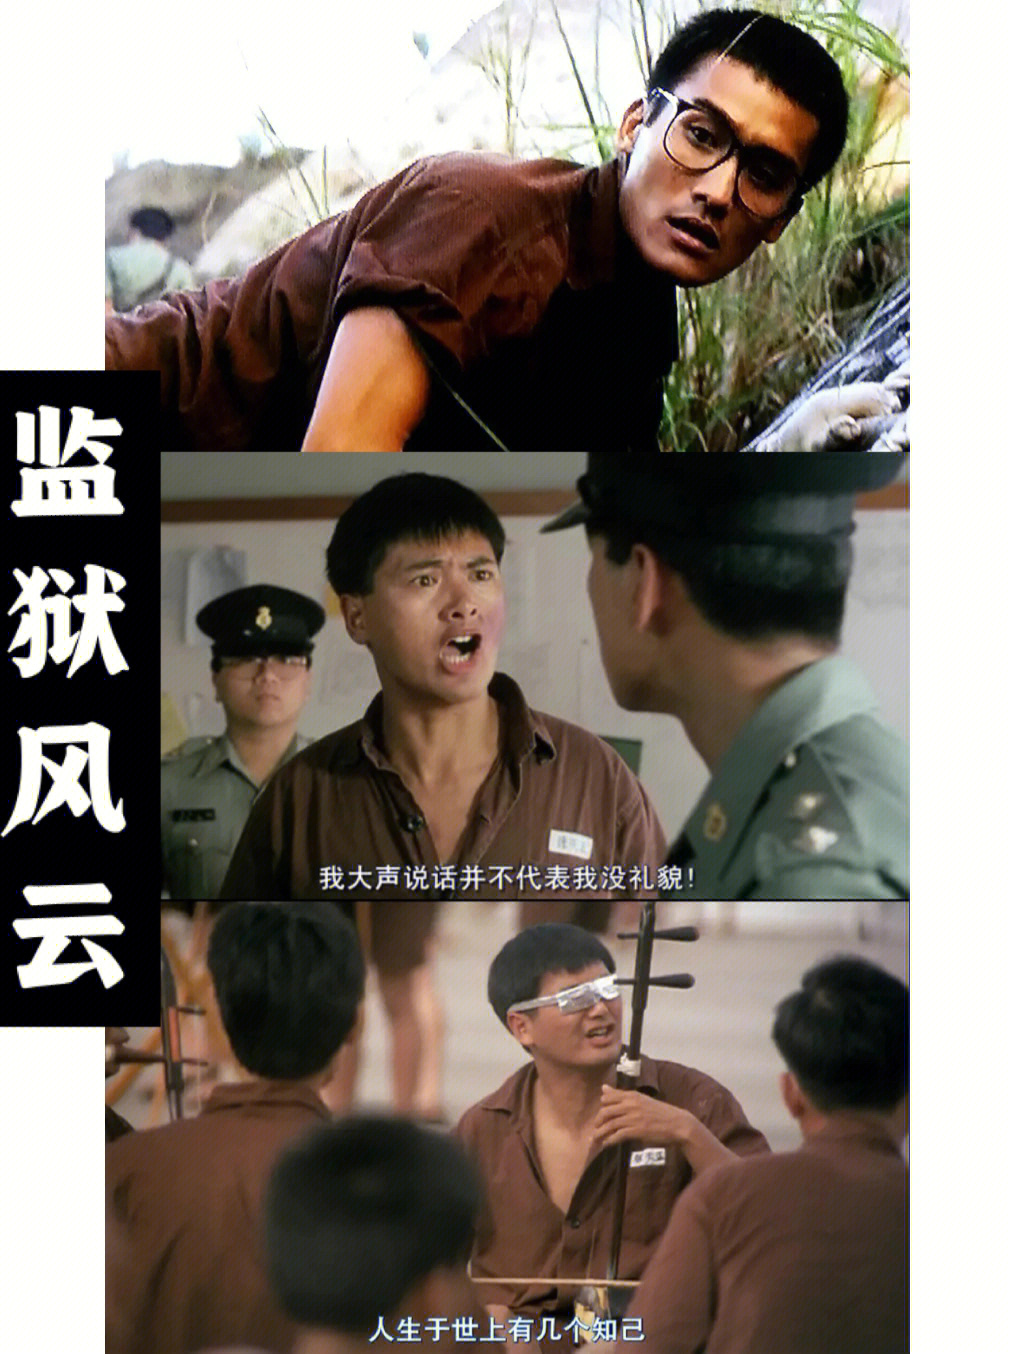 电影【监狱风云 】是华语监狱片开山之作,也是同类作品蜚声国际的代表